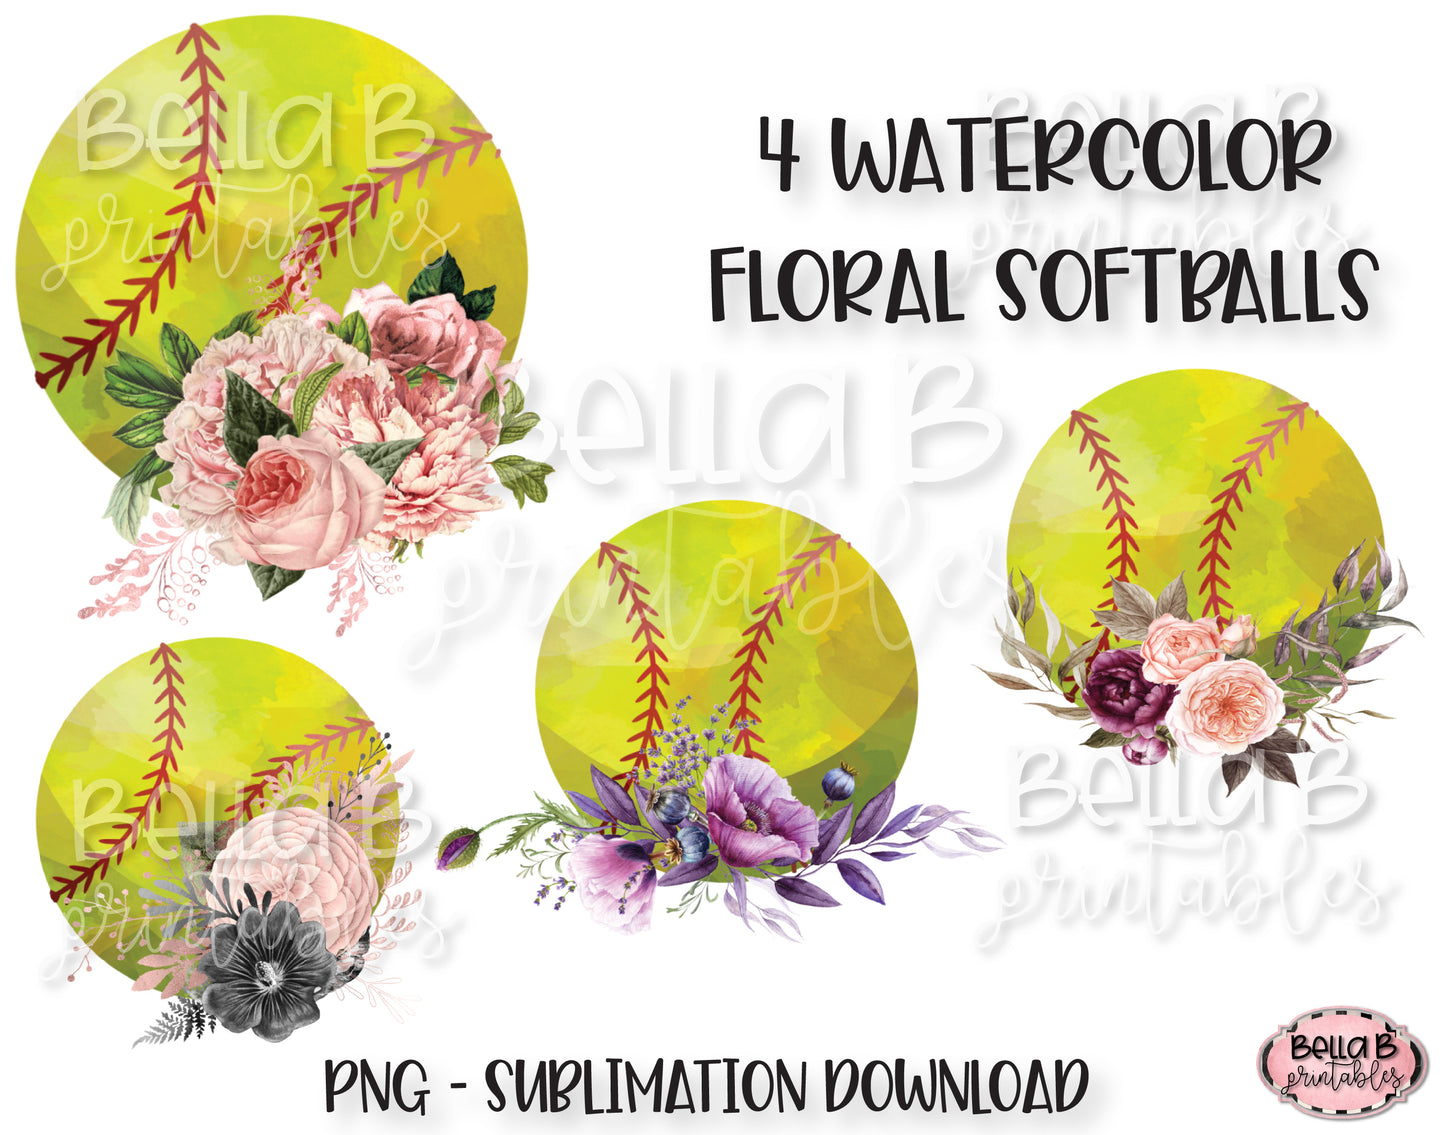 Floral Softball Sublimation Elements Bundle